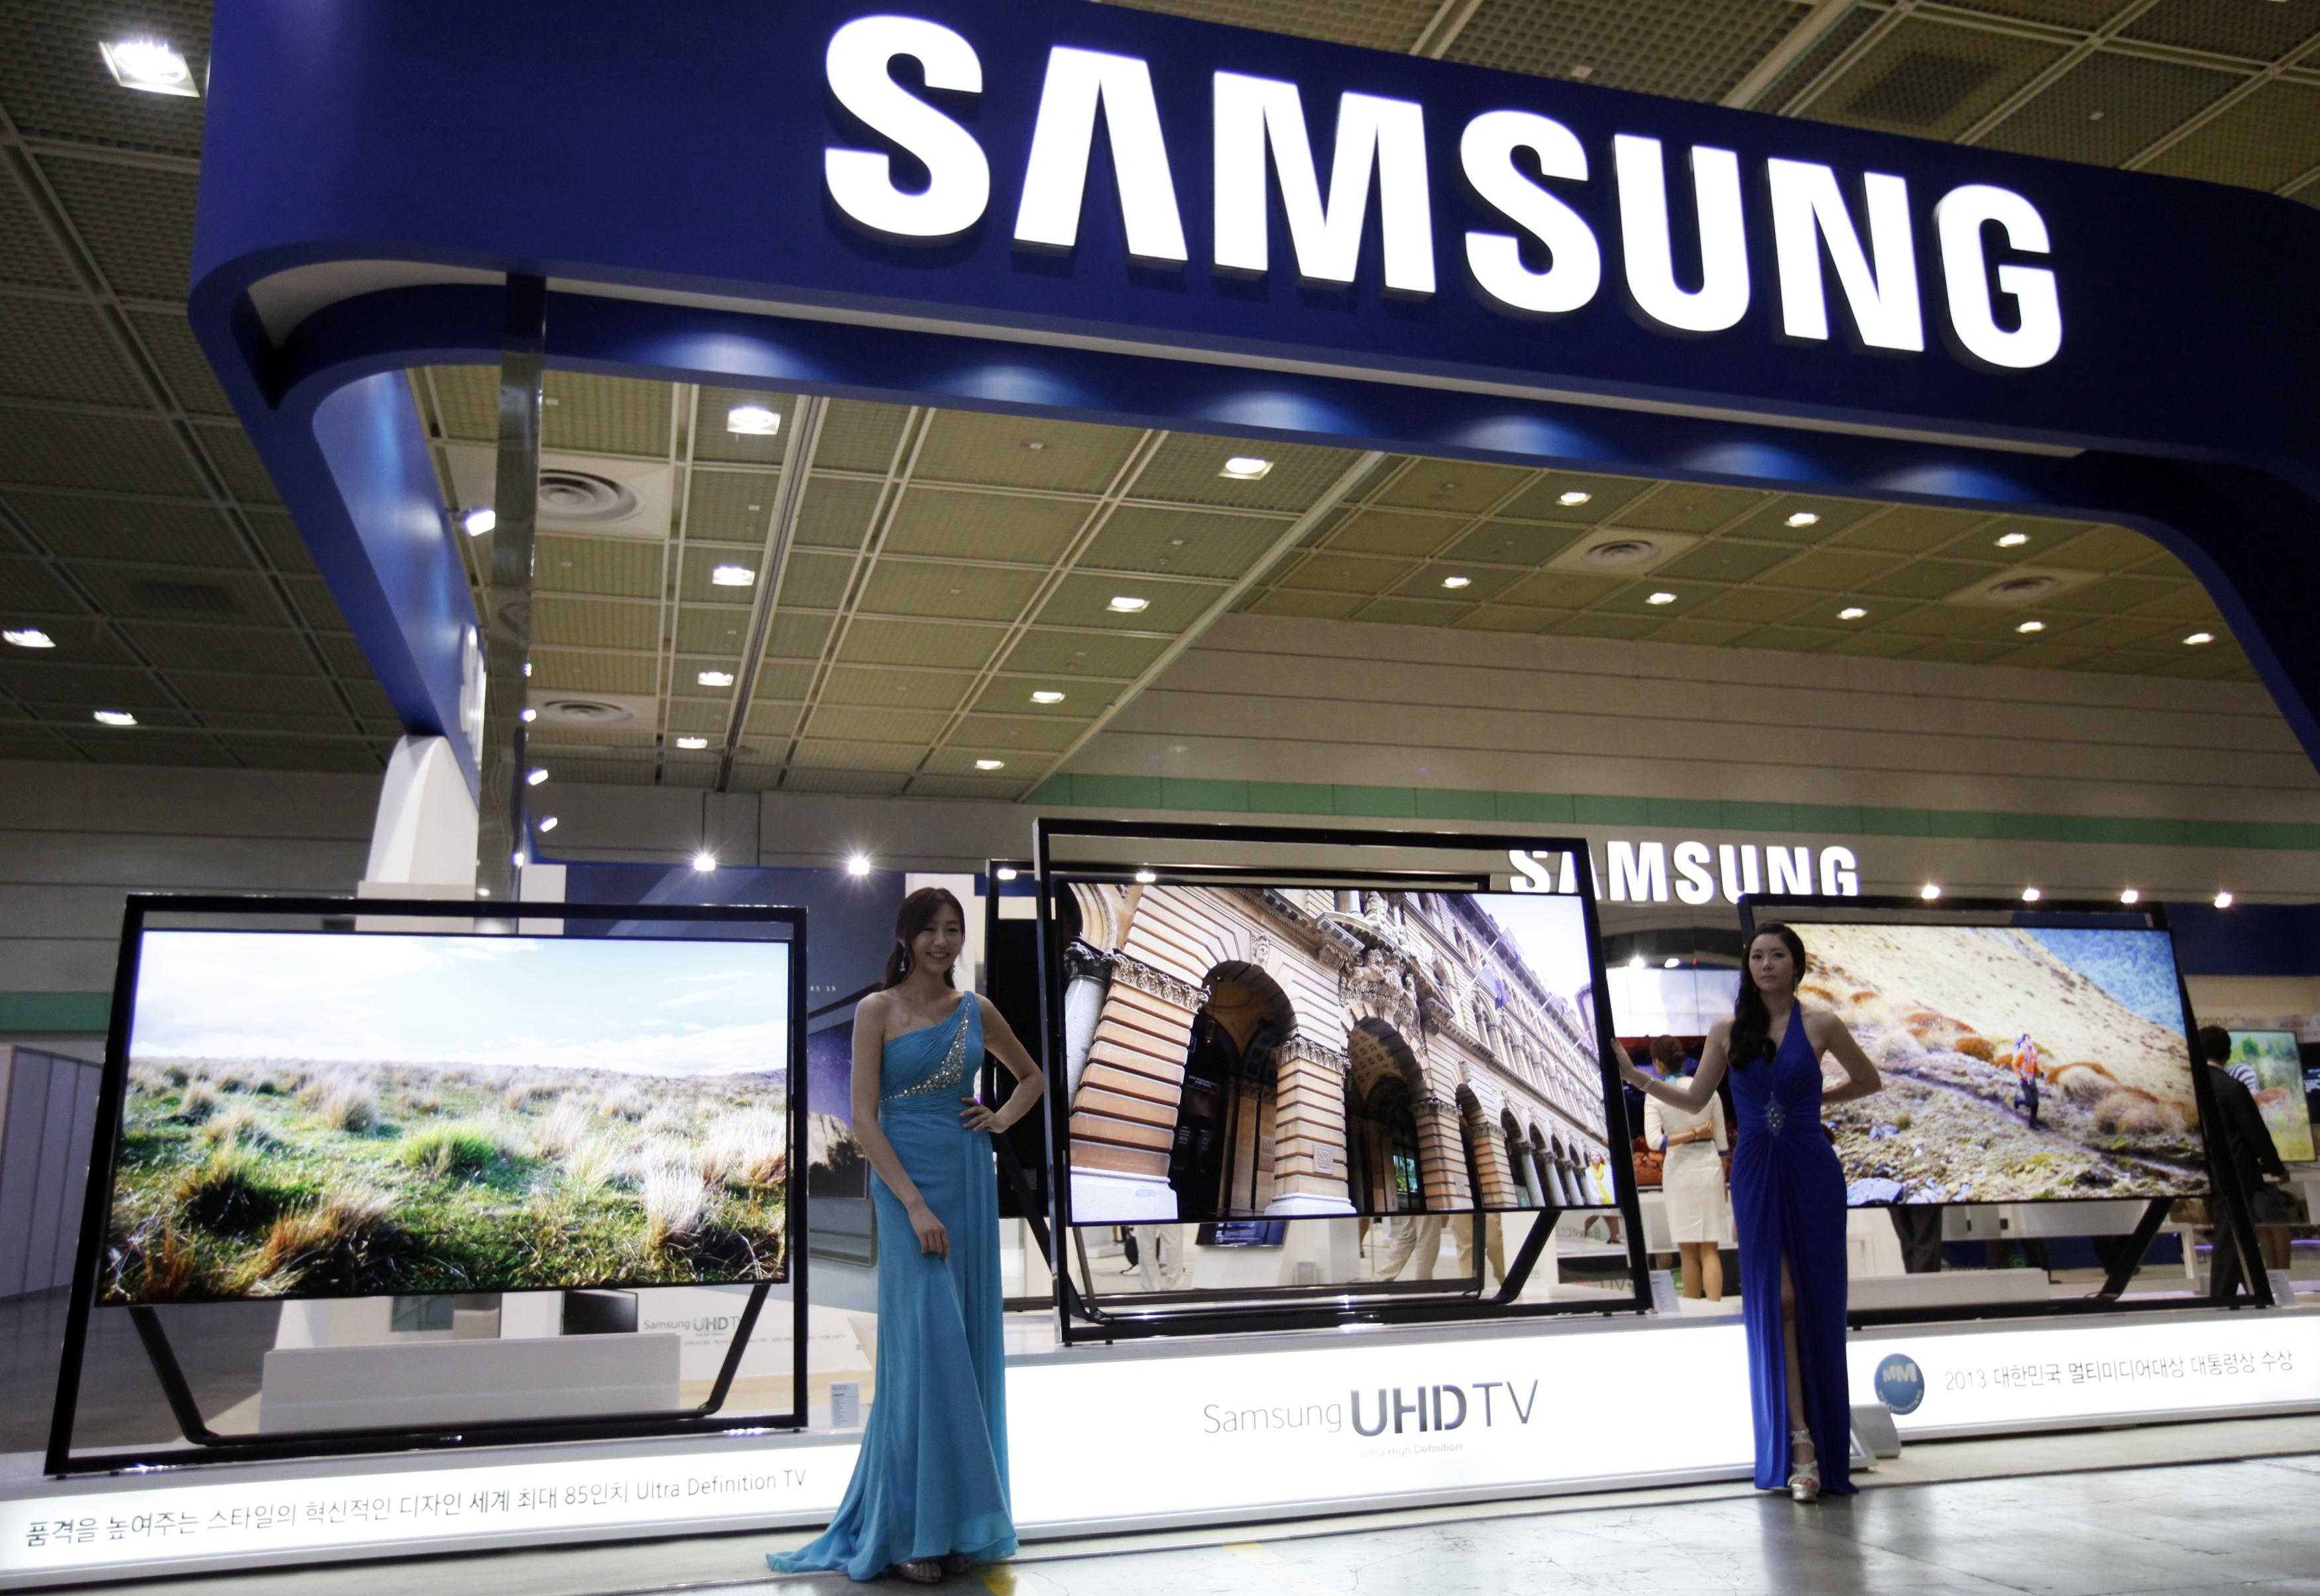 Samsung và chiến lược “Made in Vietnam”